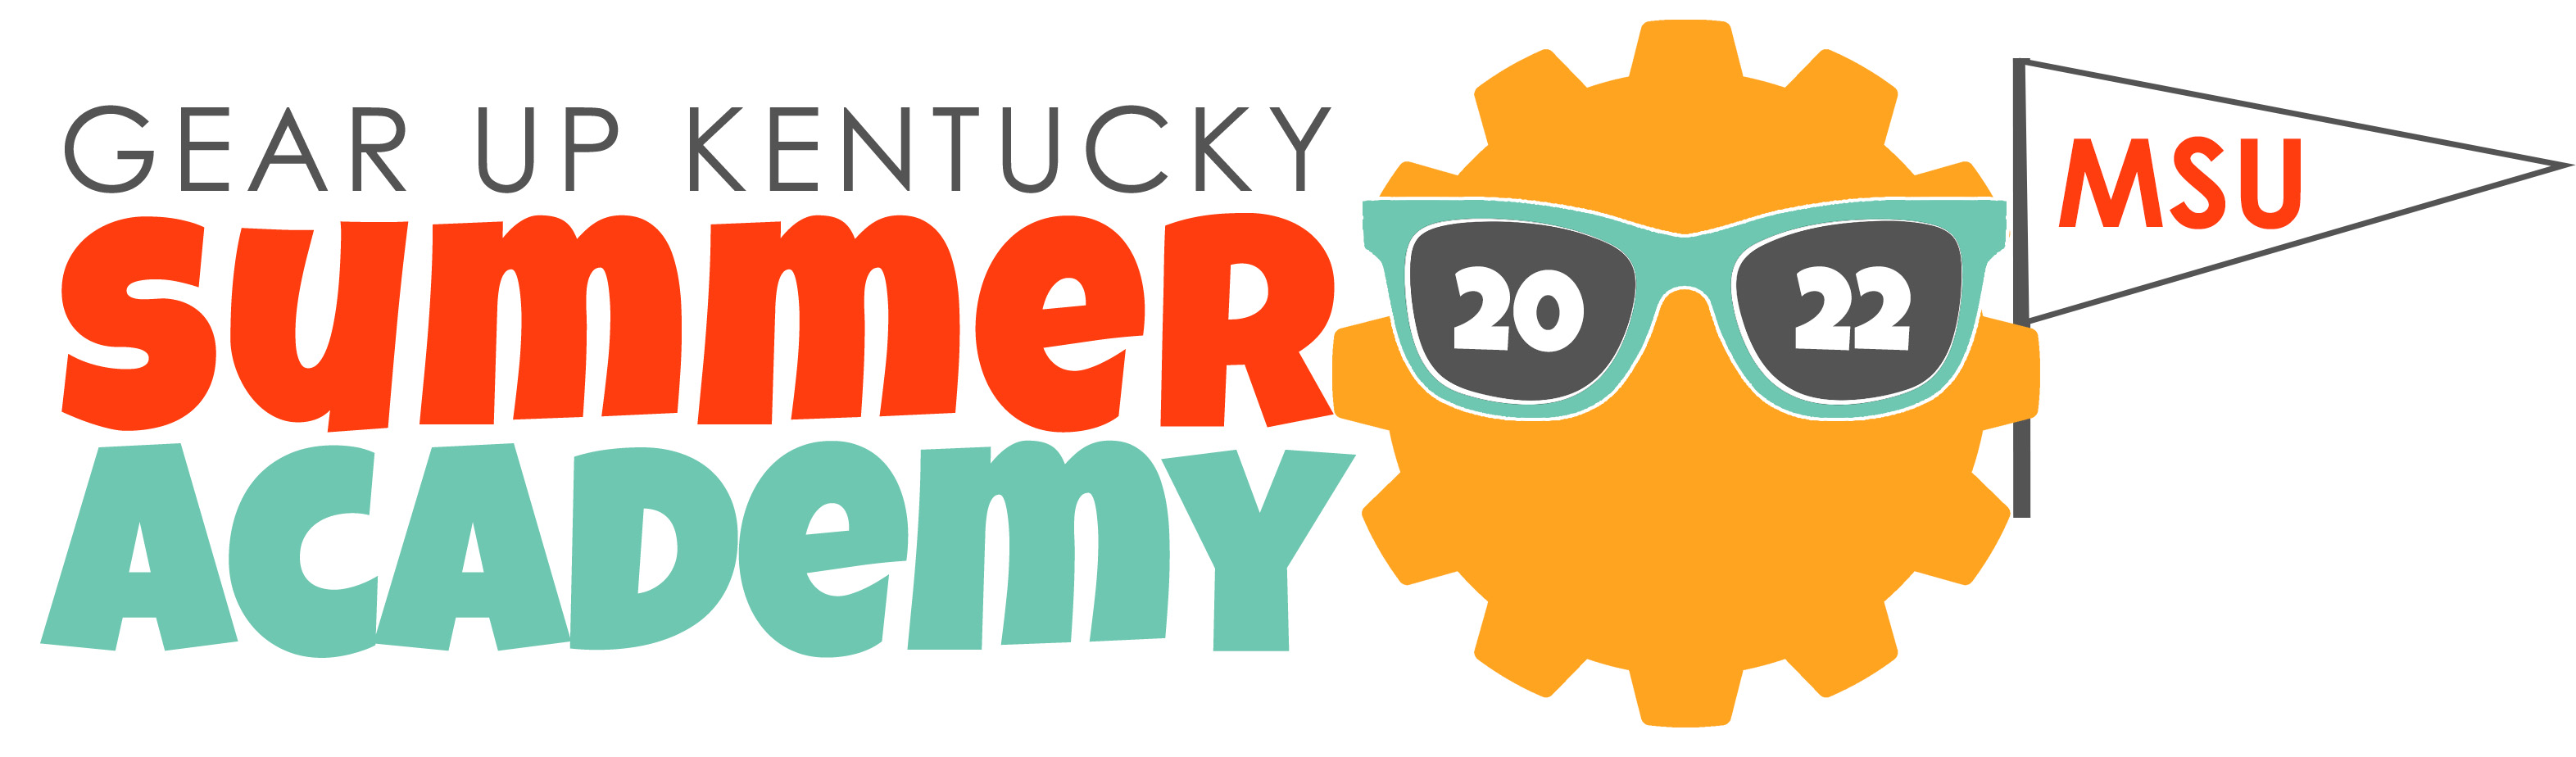 GUK Summer Academy 2022 GEAR UP Kentucky